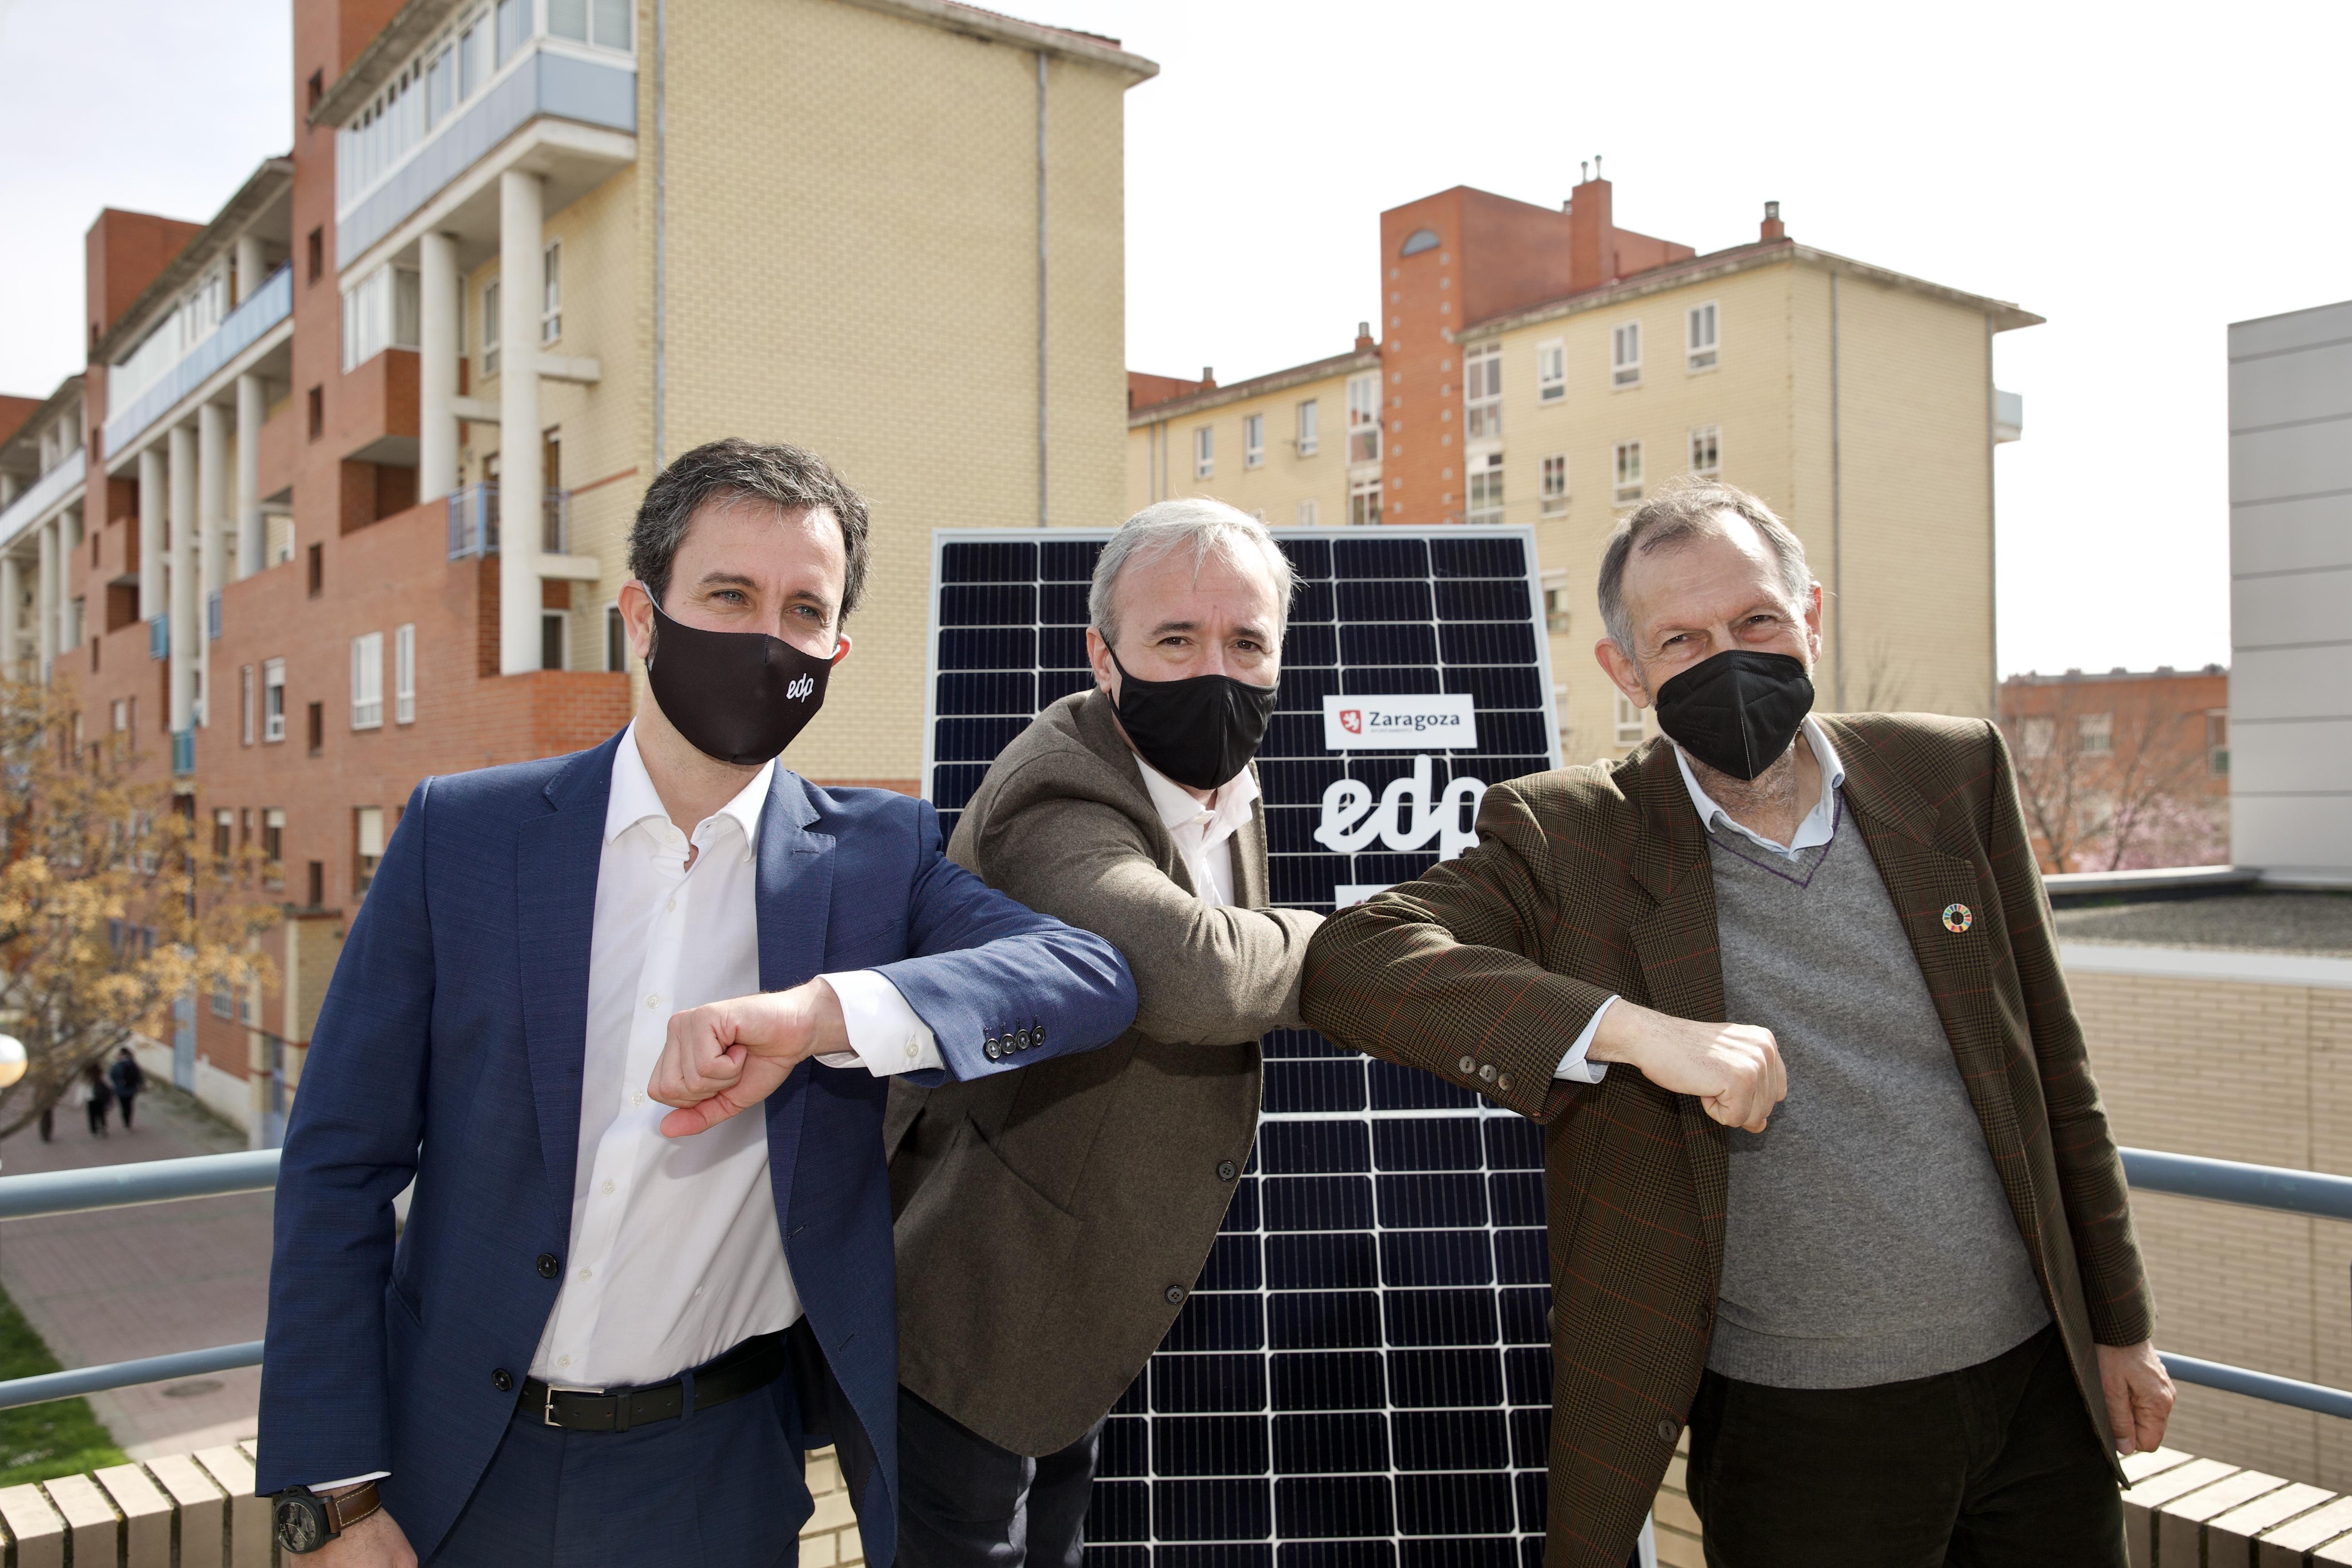 El proyecto de barrio solar en Zaragoza es pionero